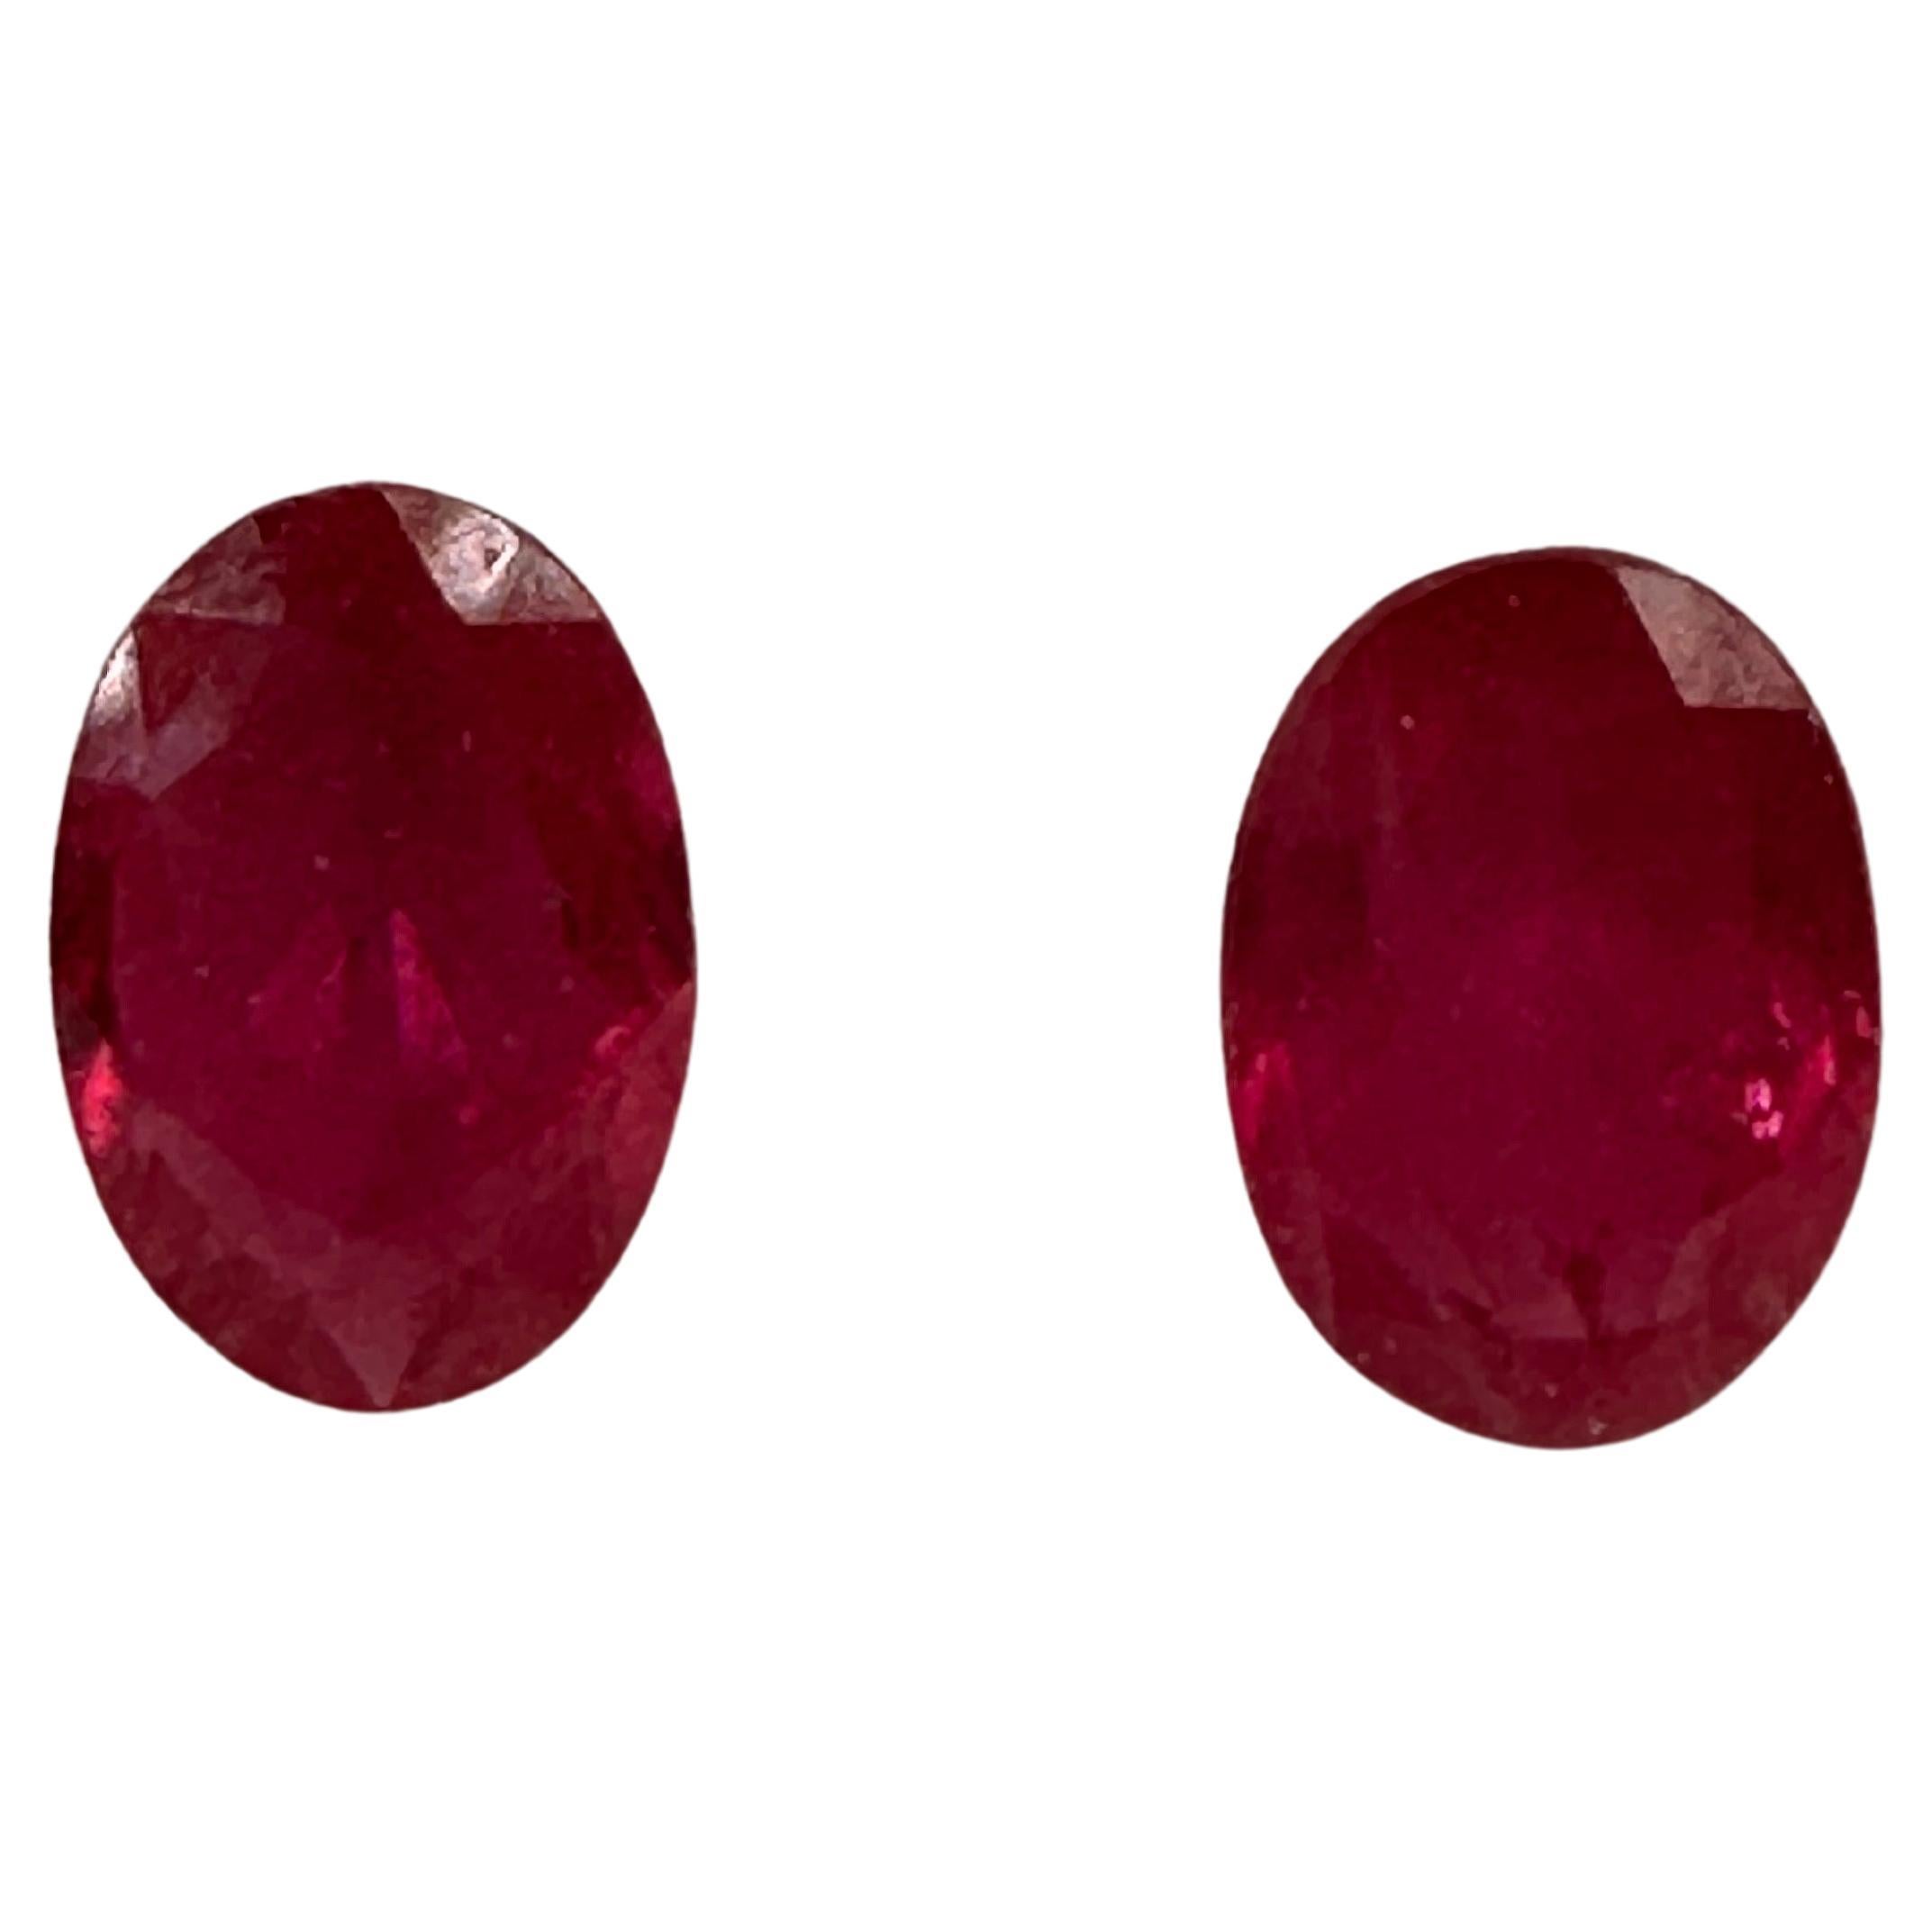 Paire de rubis assortis non traités de 6,5 x 4,5 mm, rubis ovale rouge rosé naturel